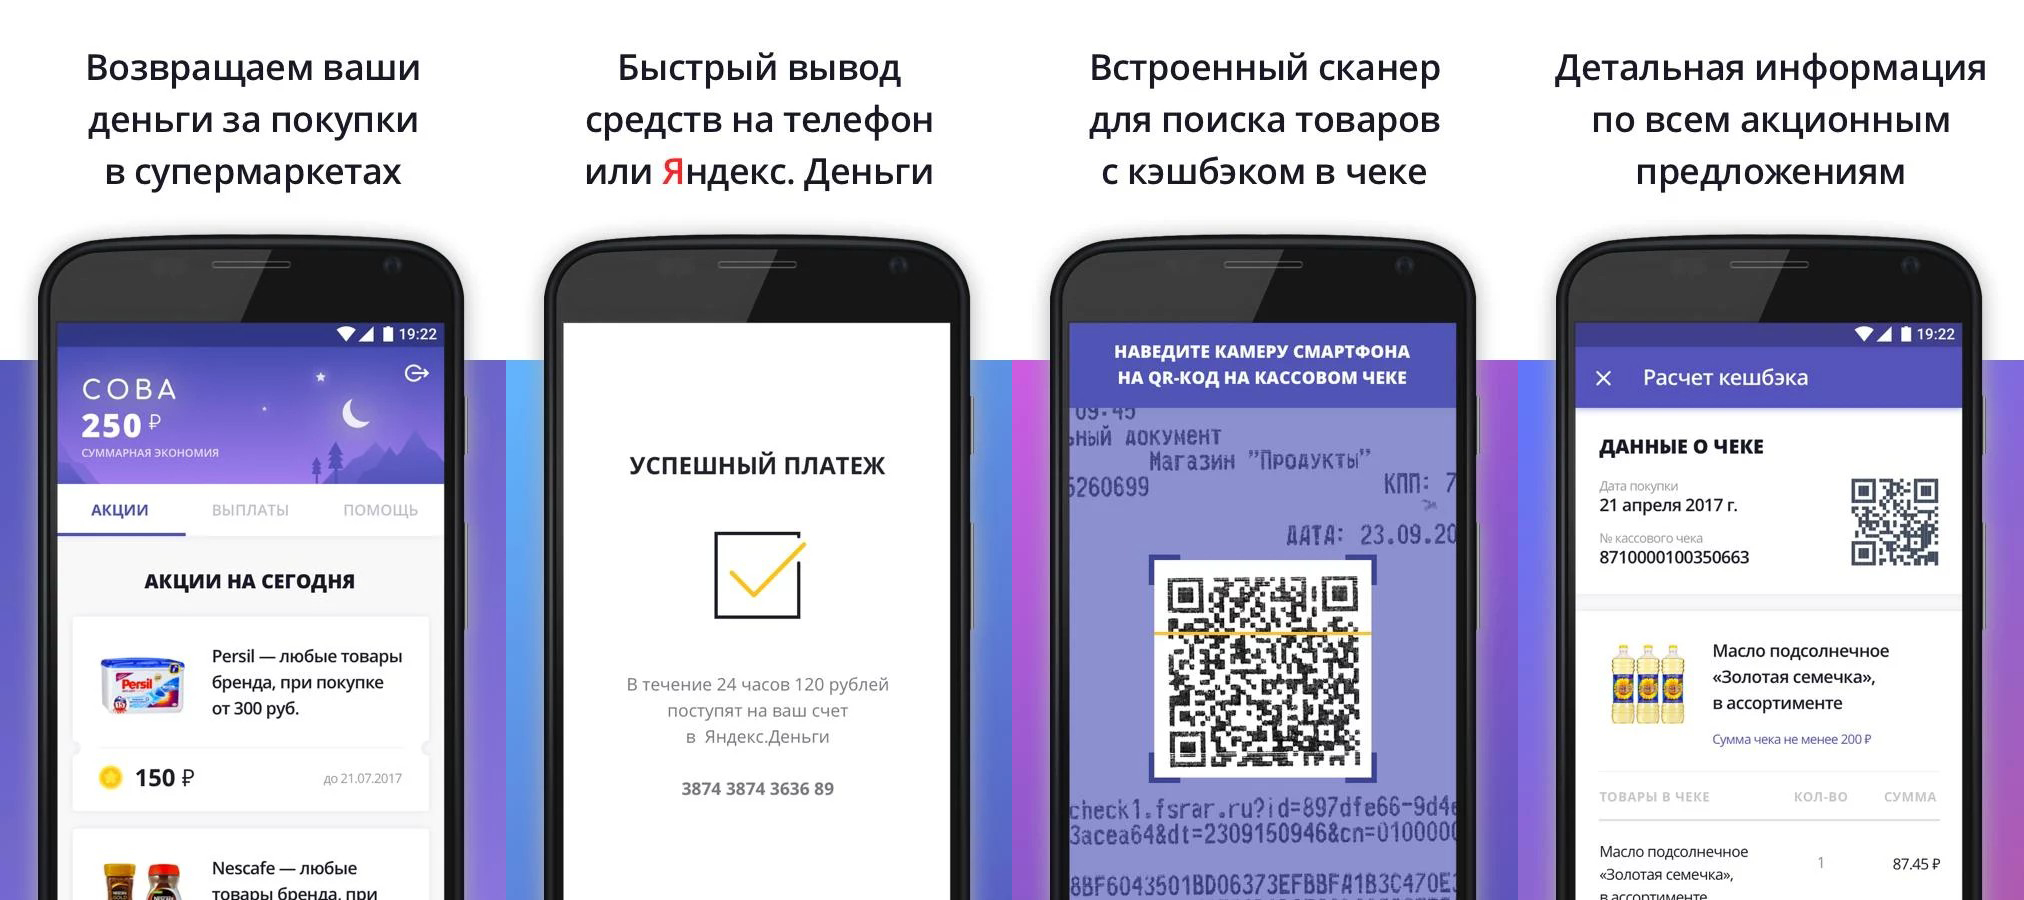 Портфельный проект «Яндекса» «Едадил» запускает кэшбэк-сервис для супермаркетов - 1